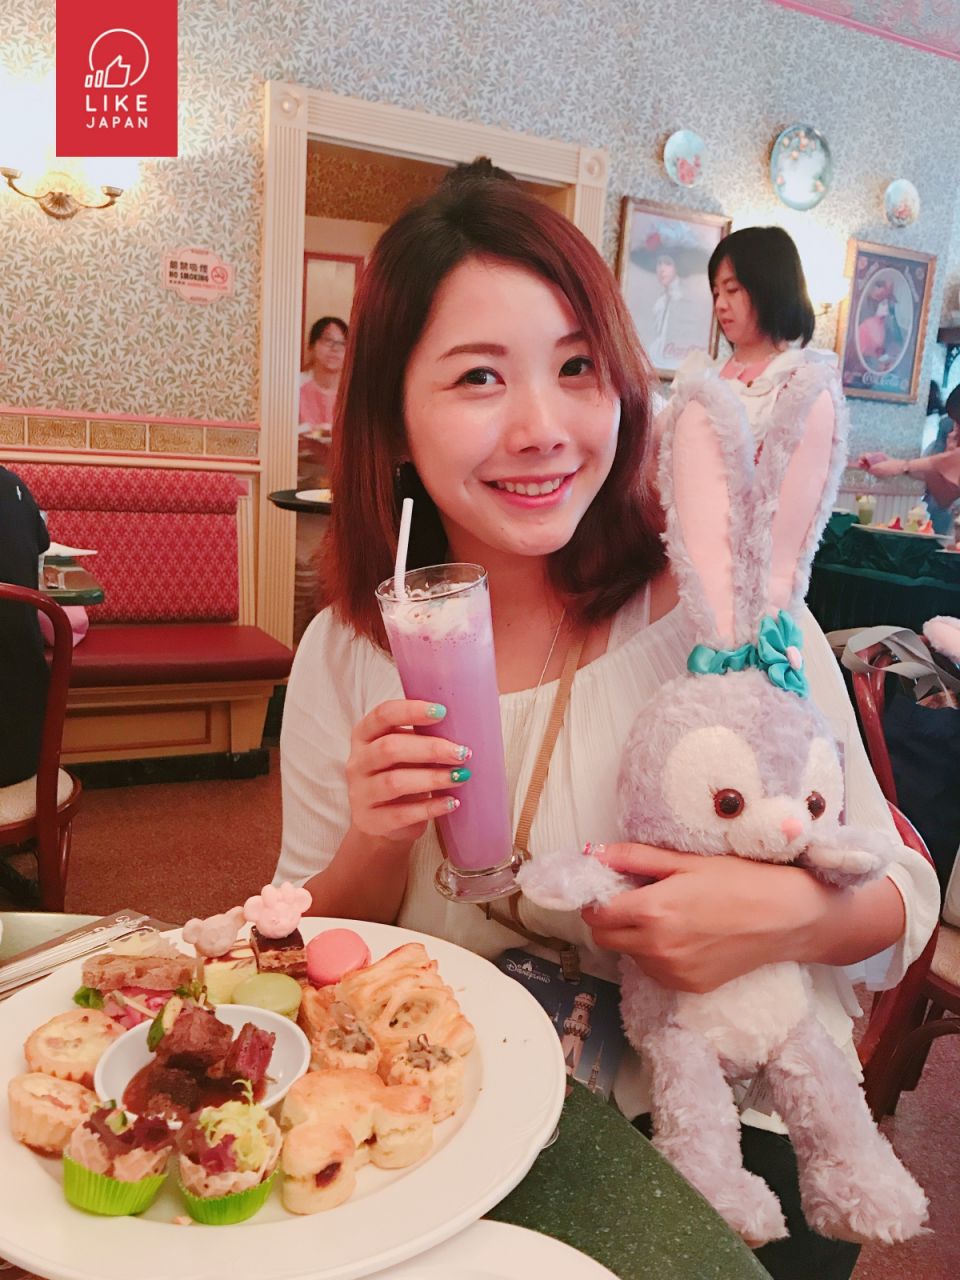 東京迪士尼人氣小兔StellaLou  登陸香港迪士尼！